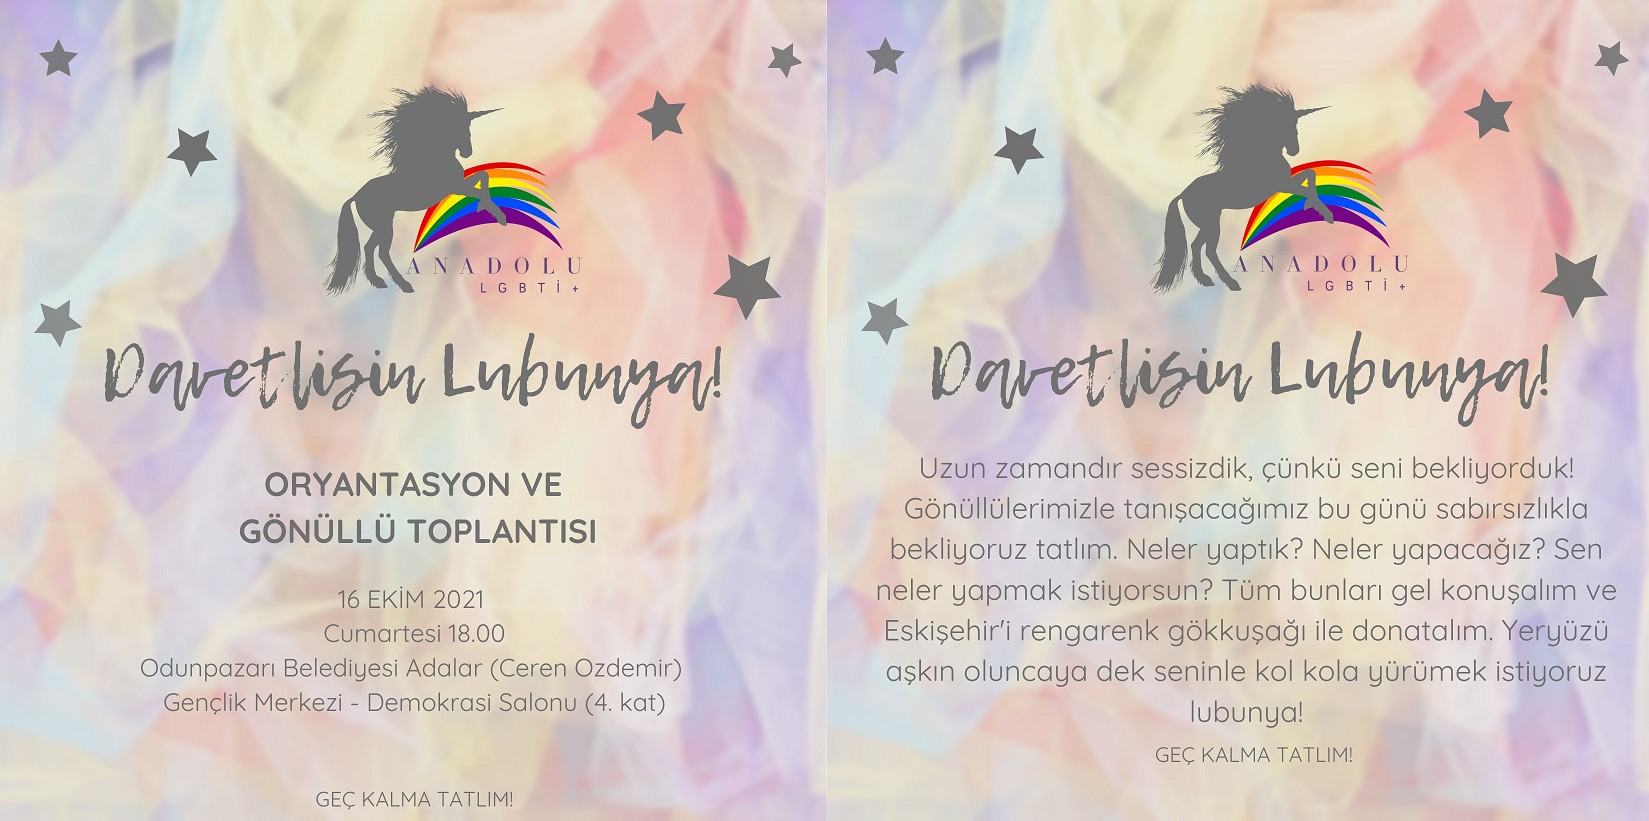 Eskişehir Anadolu LGBTİ+ gönüllülerini arıyor Kaos GL - LGBTİ+ Haber Portalı